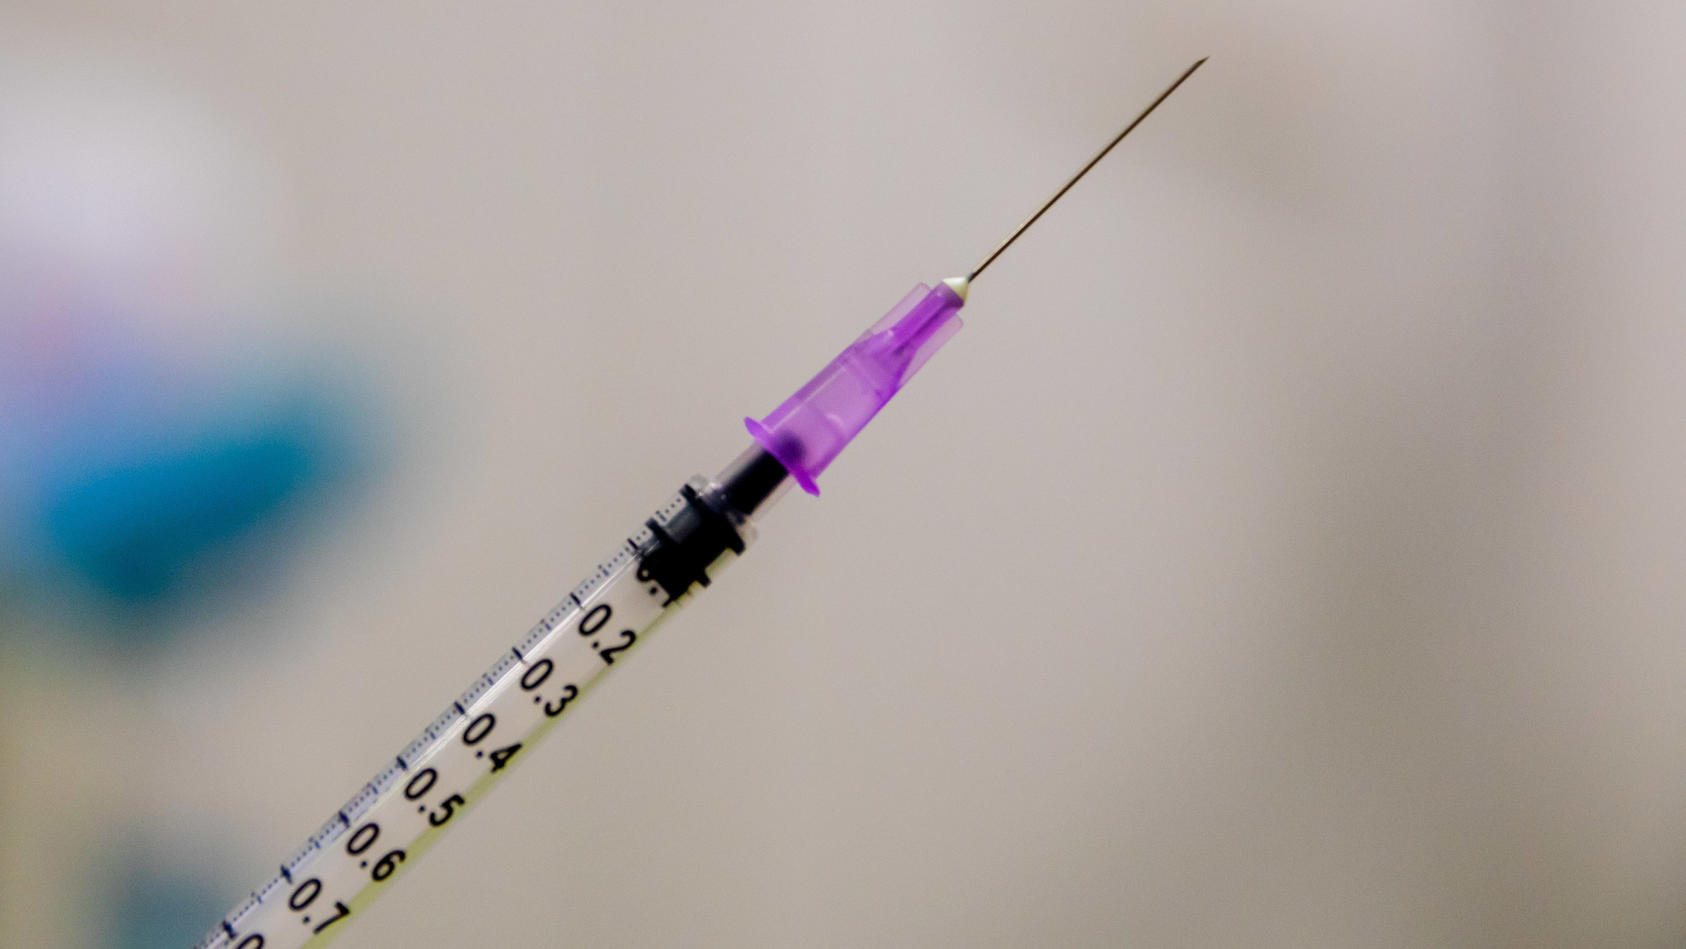 Der Impfstoff Vaxzevira hat vereinzelt zu Hirnvenenthrombosen geführt. Doch woran liegt das?